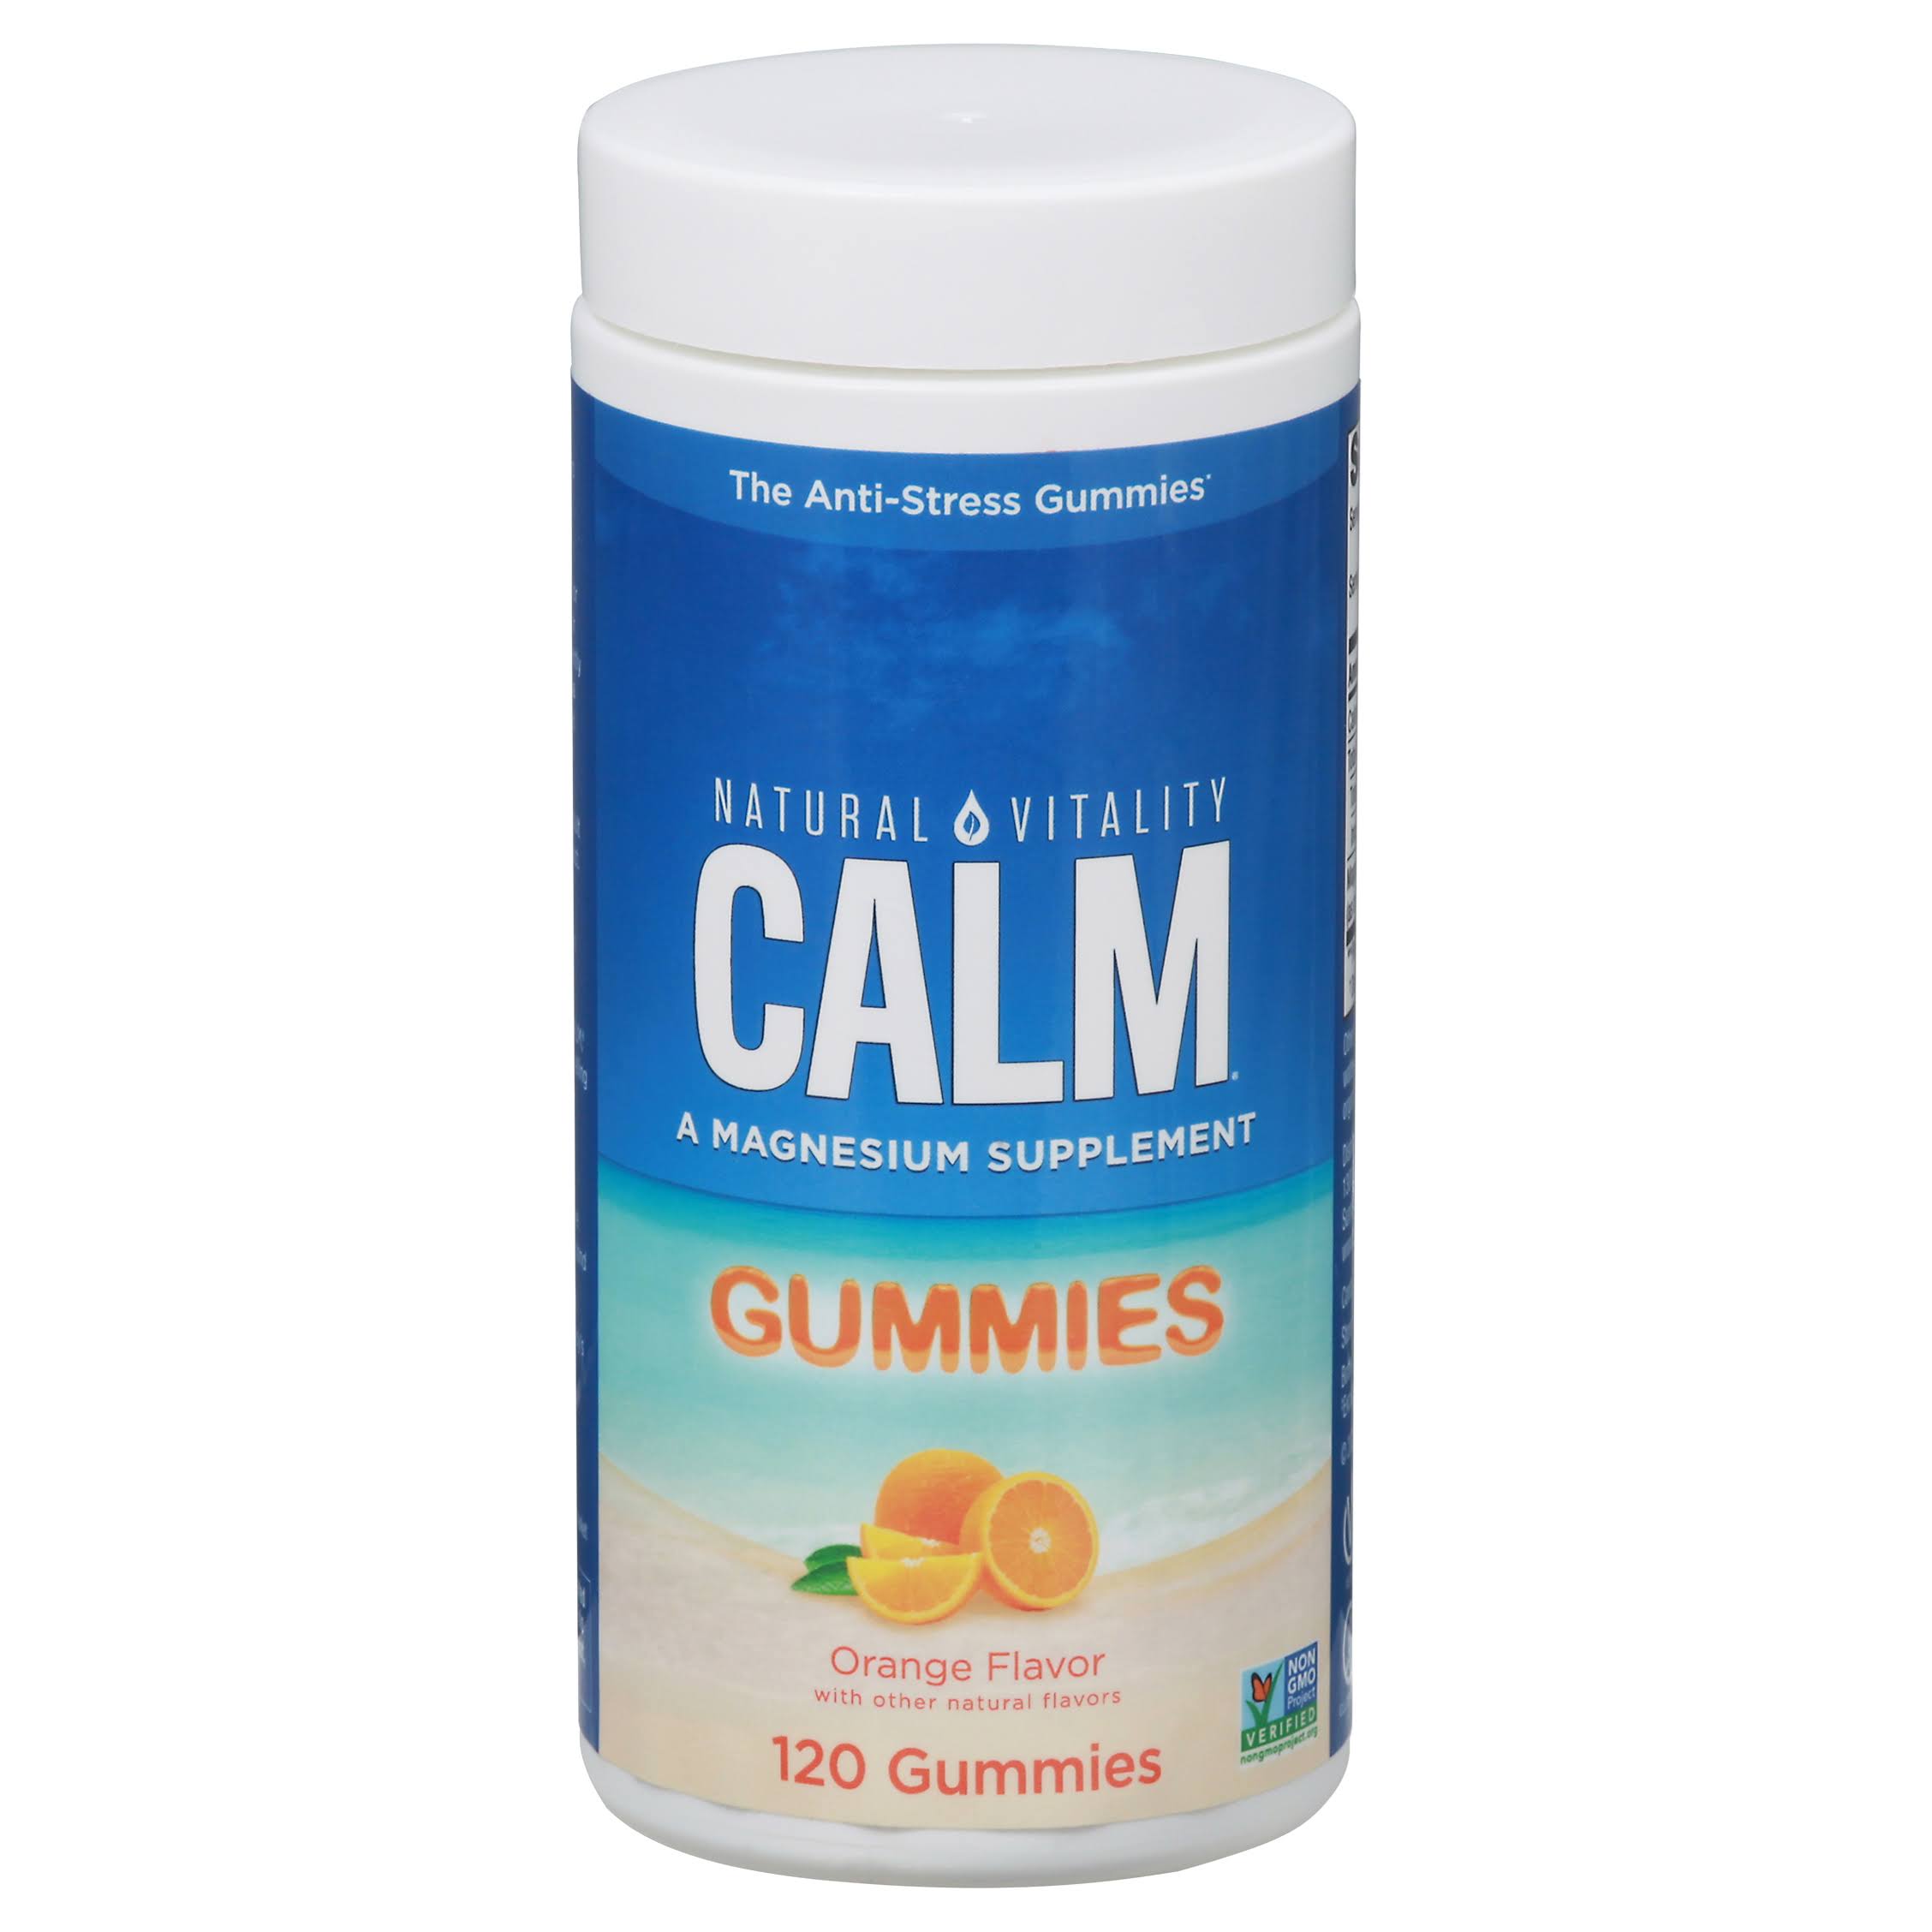 Natural Vitality - Calm Gummies Orange Flavor - 120 Gummies